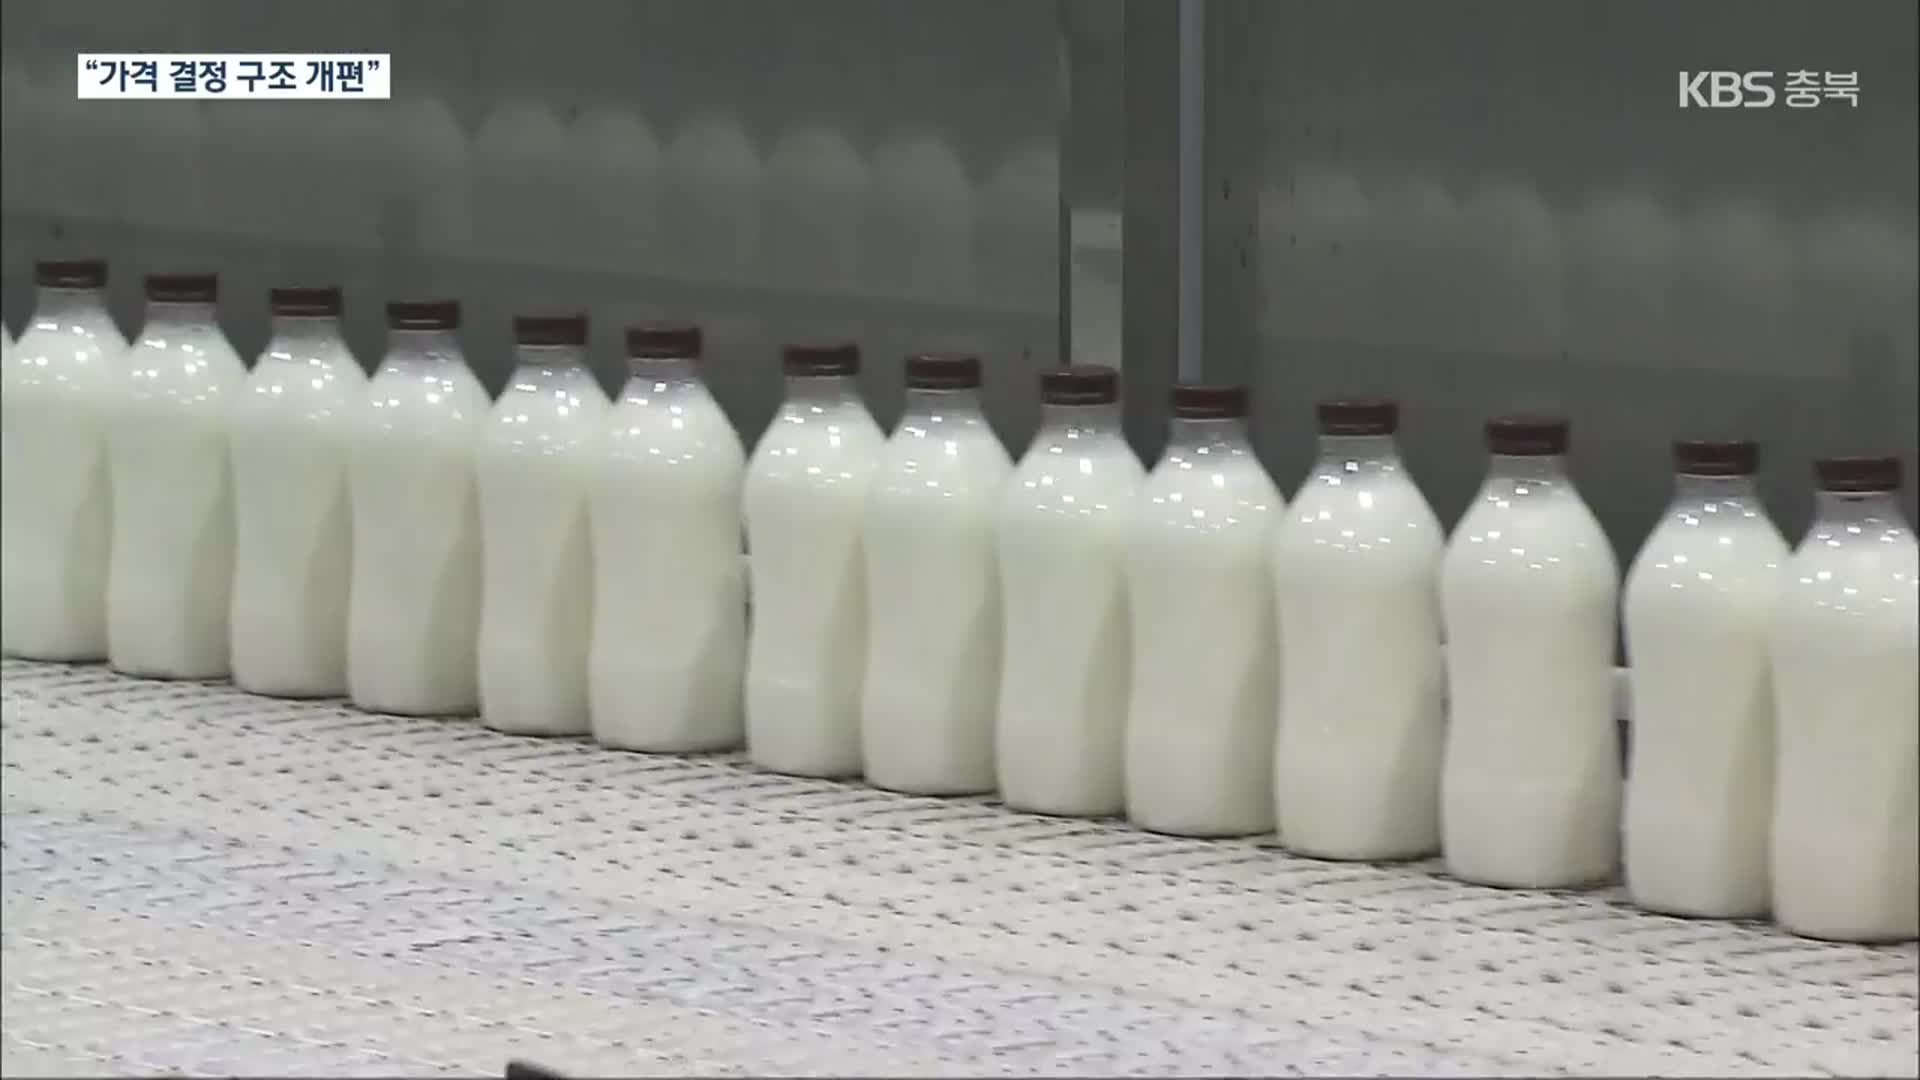 우유 남아 도는데 오르는 원윳값…“낙농가 입김” vs “생산비 올라”